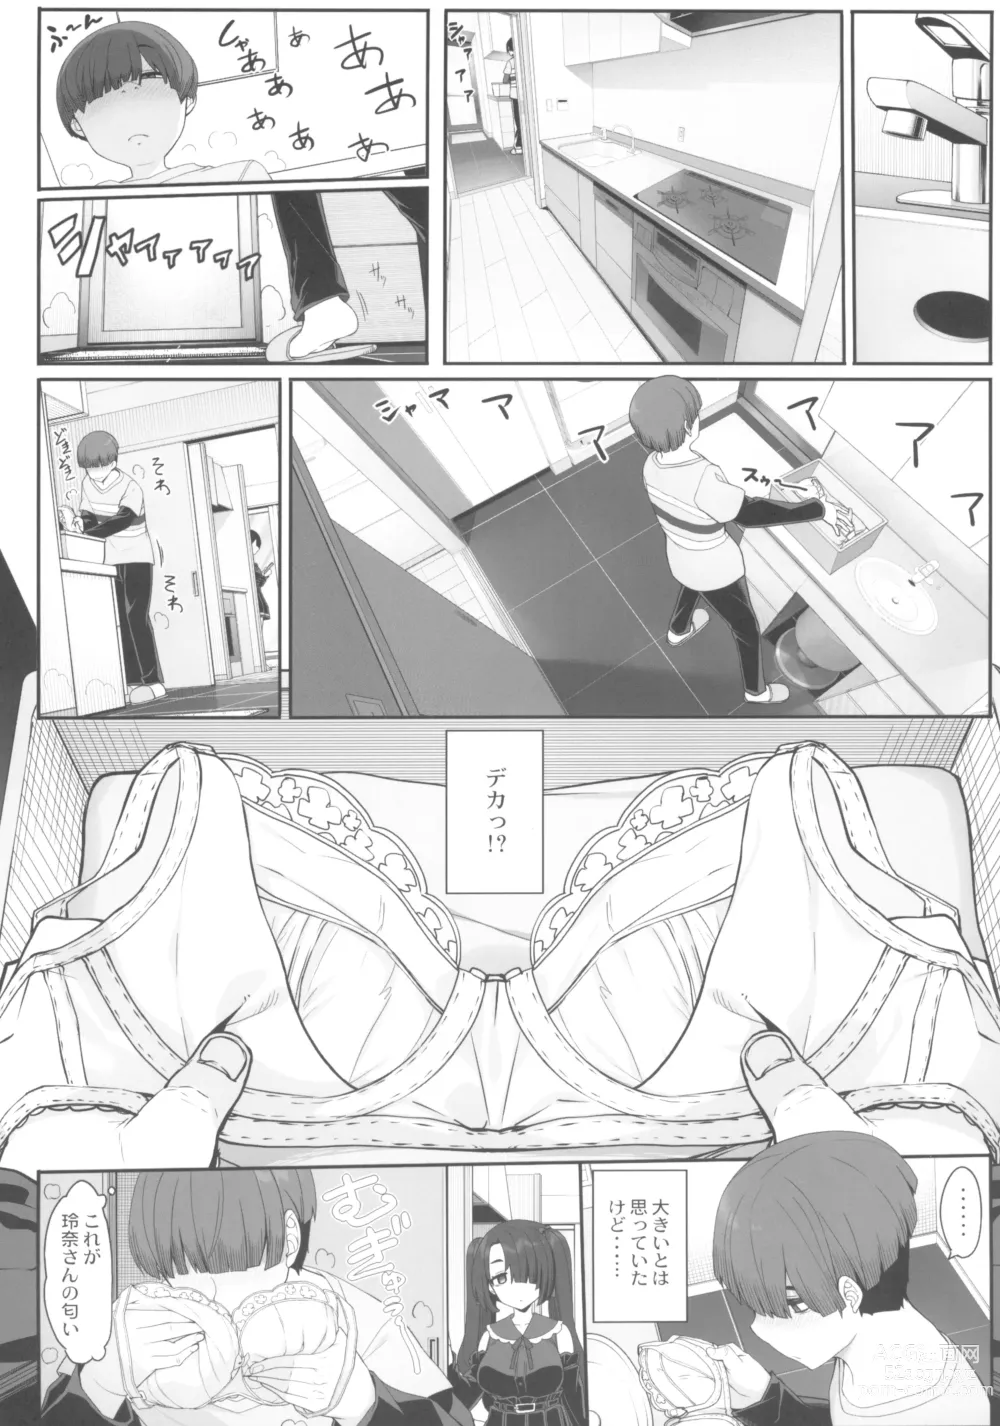 Page 6 of doujinshi Wake Ari Josei wa Yoru no Ecchi de Shirokuro Tsuketai